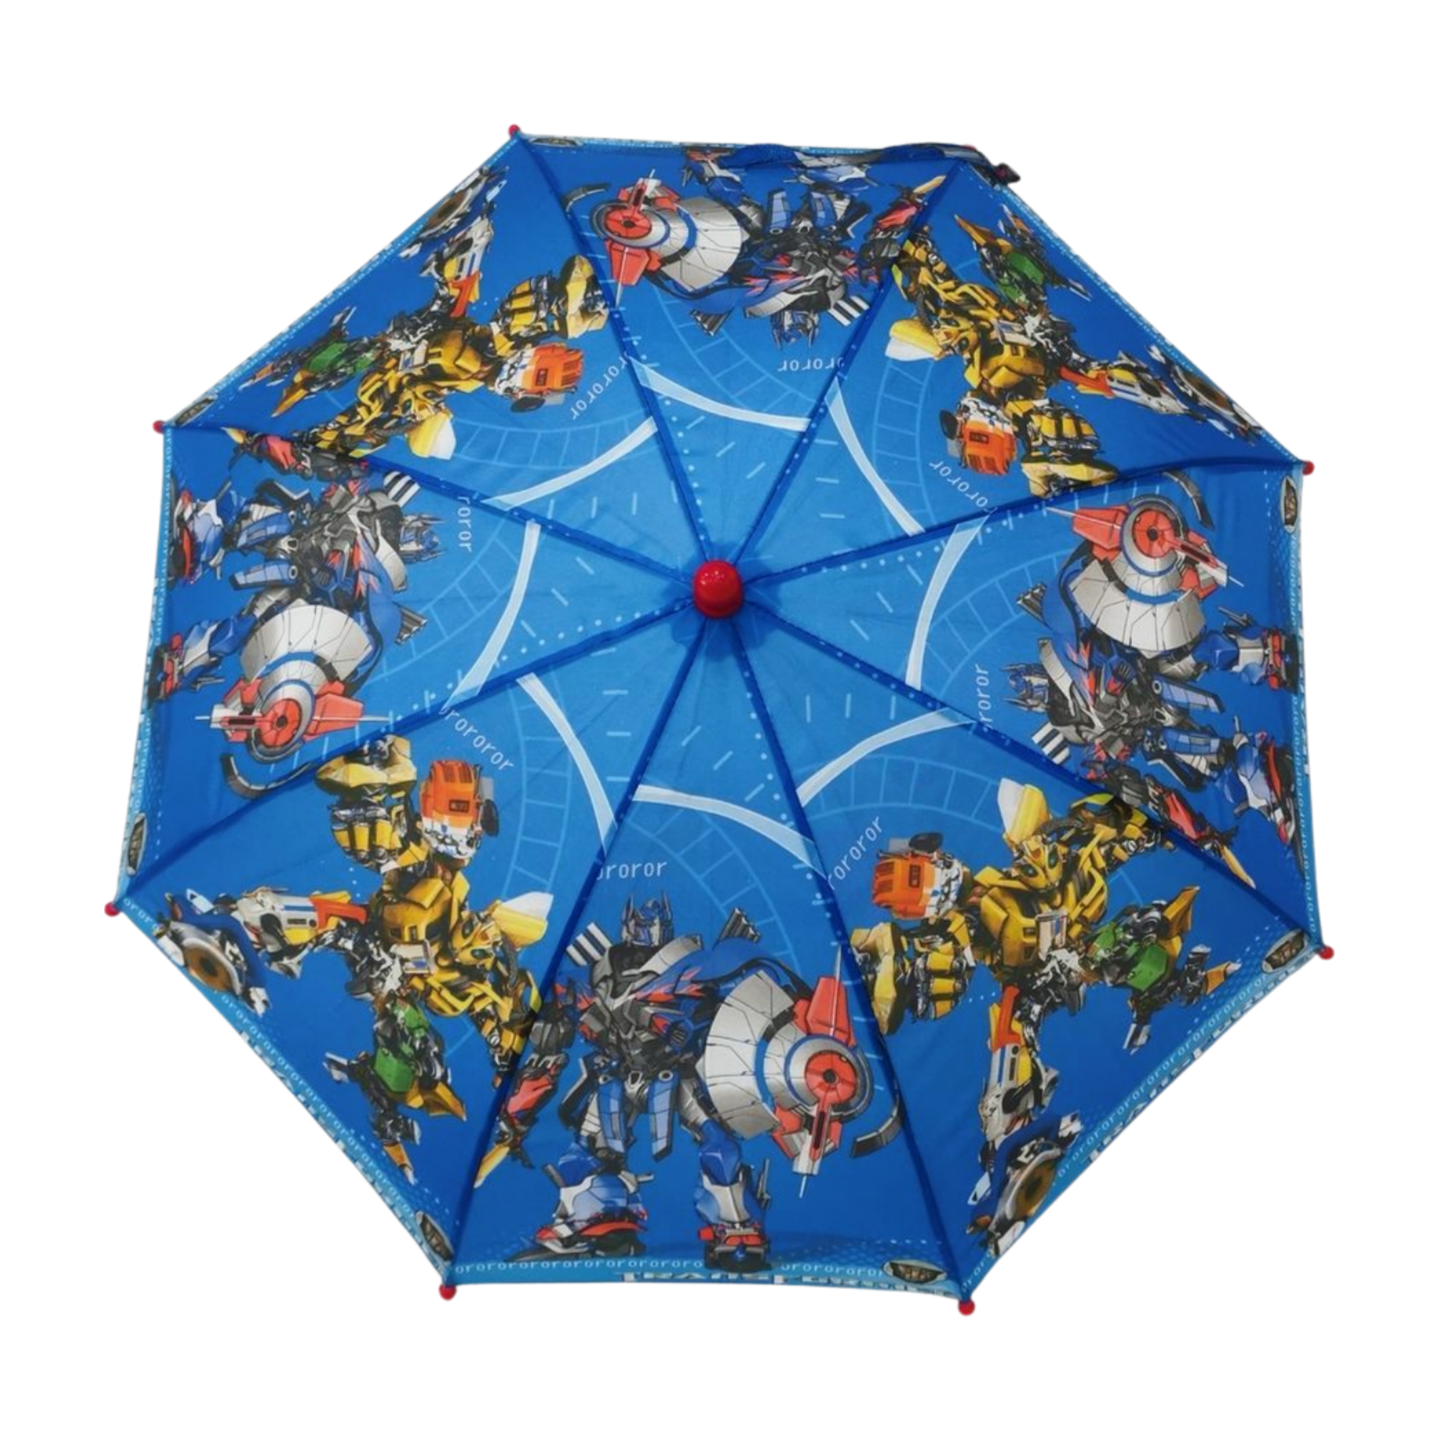 https://www.hodaumbrella.com/mini-children-umbrella-product/